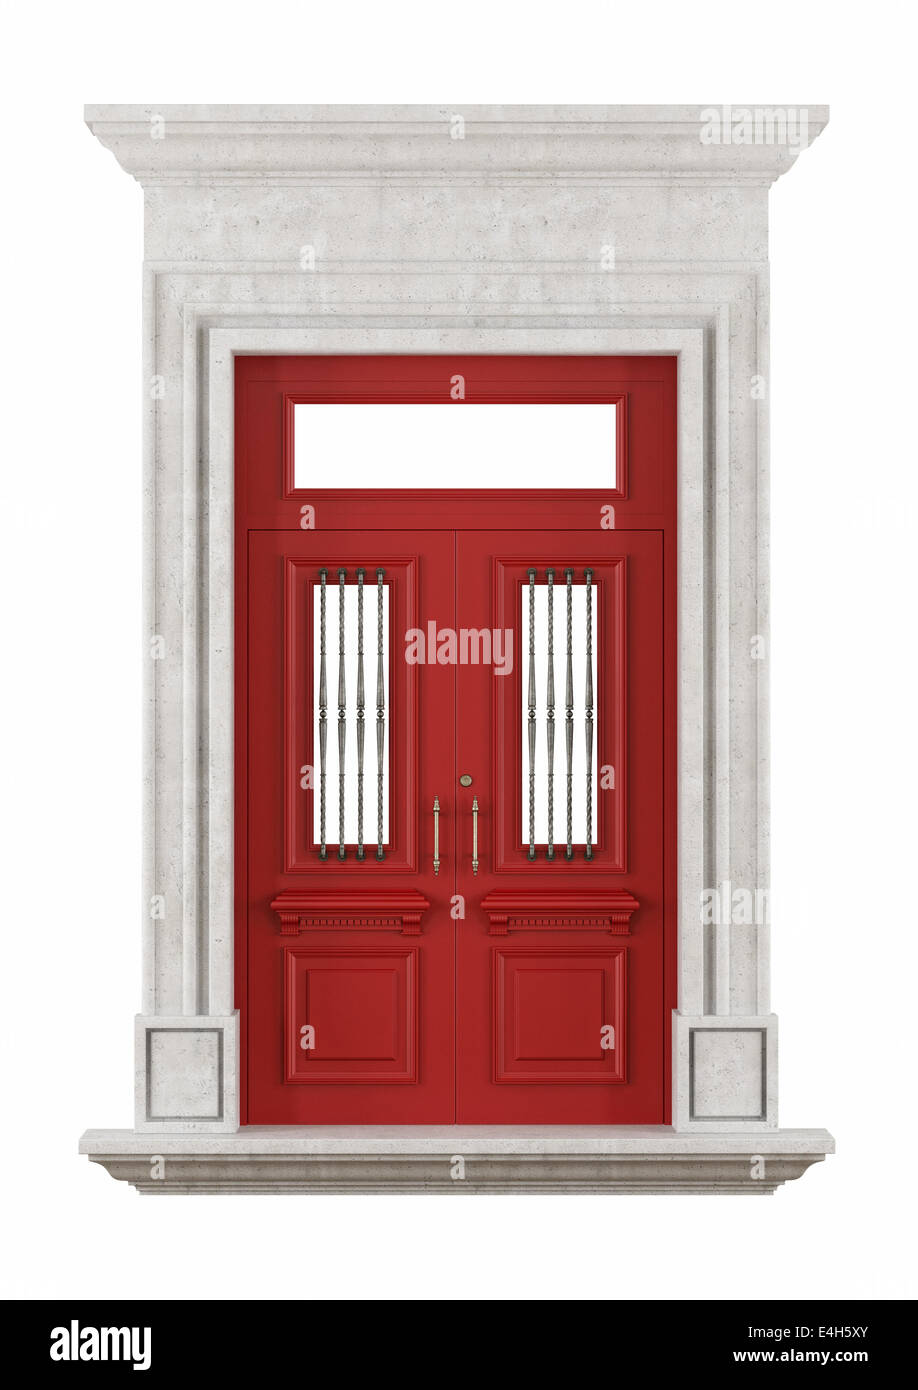 Stein-Portal mit roten Eingangstür im klassischen Stil, isoliert auf weiss - Rendering Stockfoto